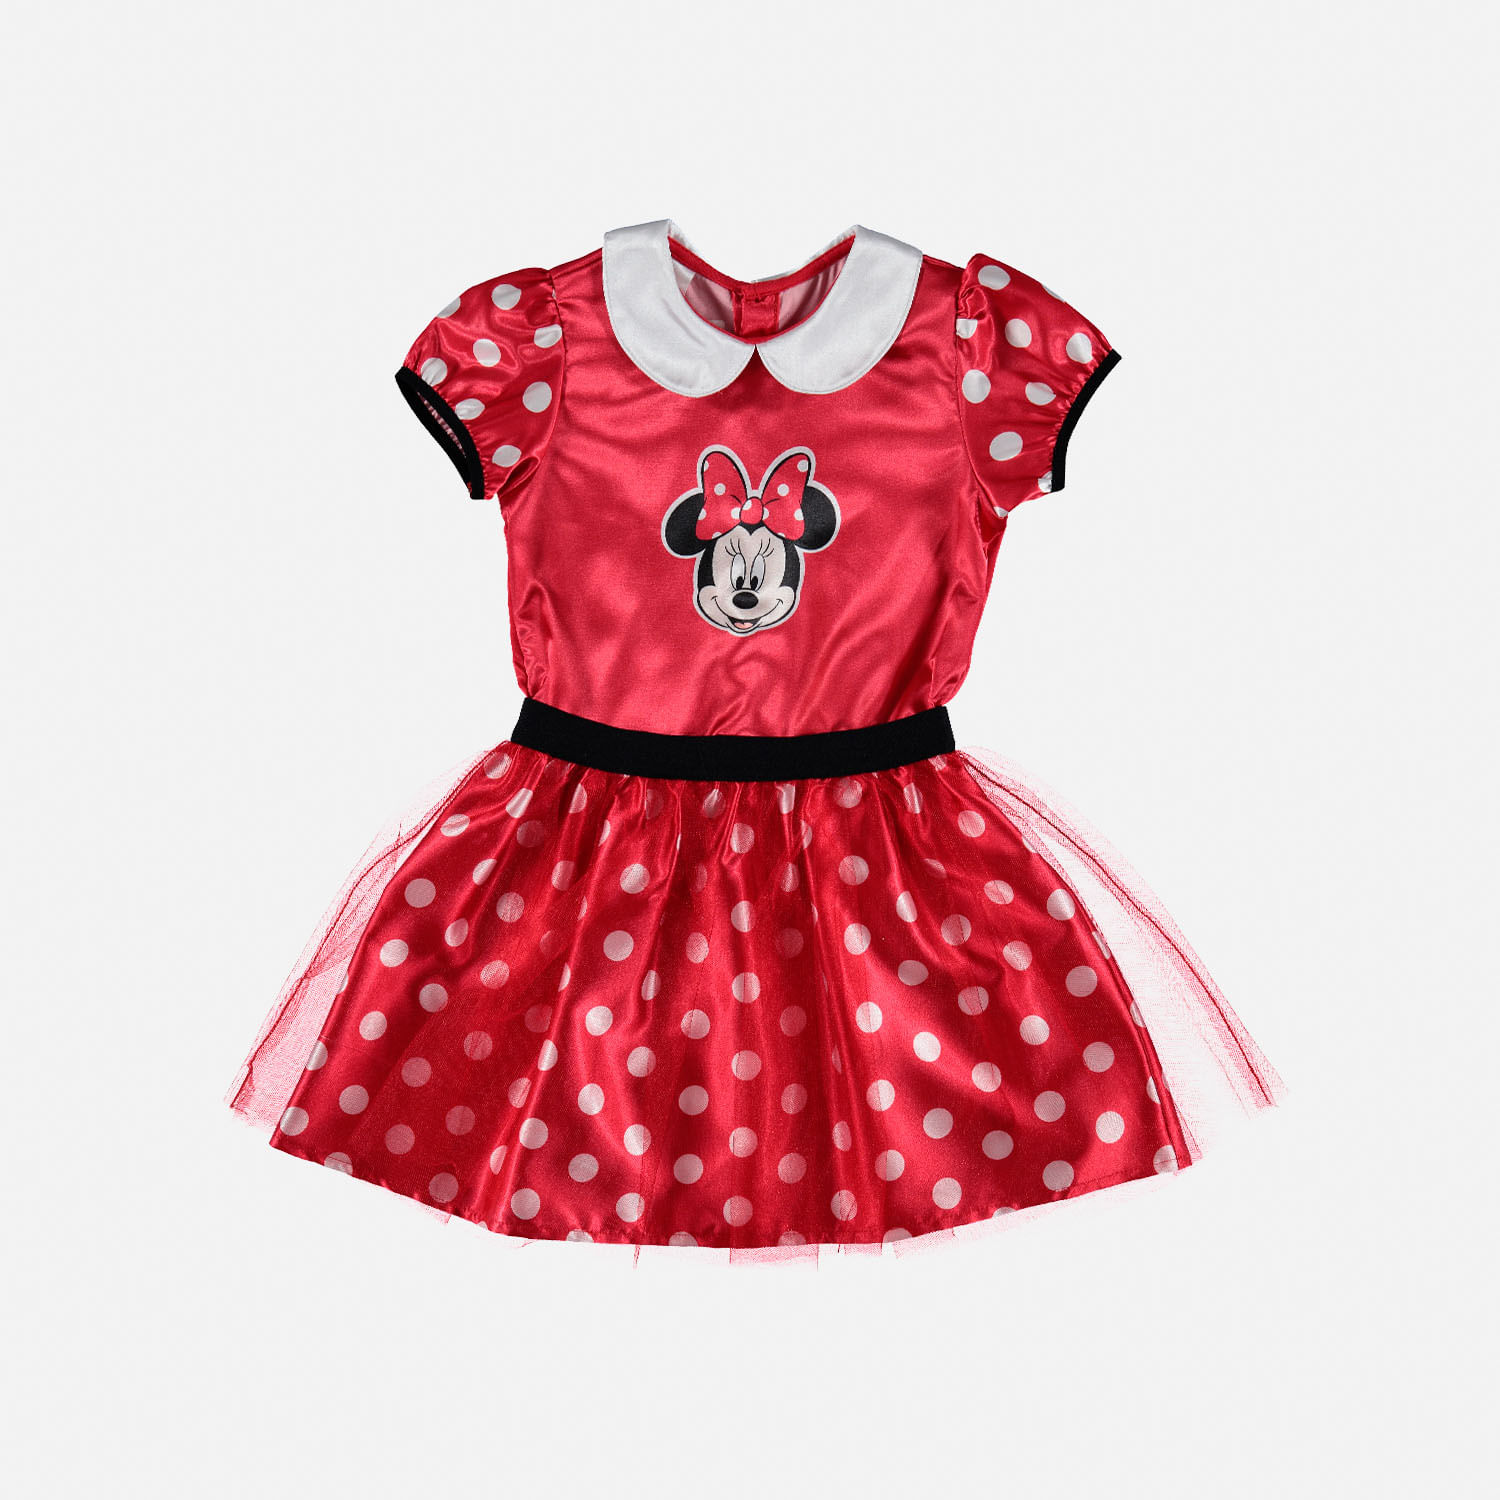 Vestido de Minnie Mouse con manga corta para niña 2T a 5T